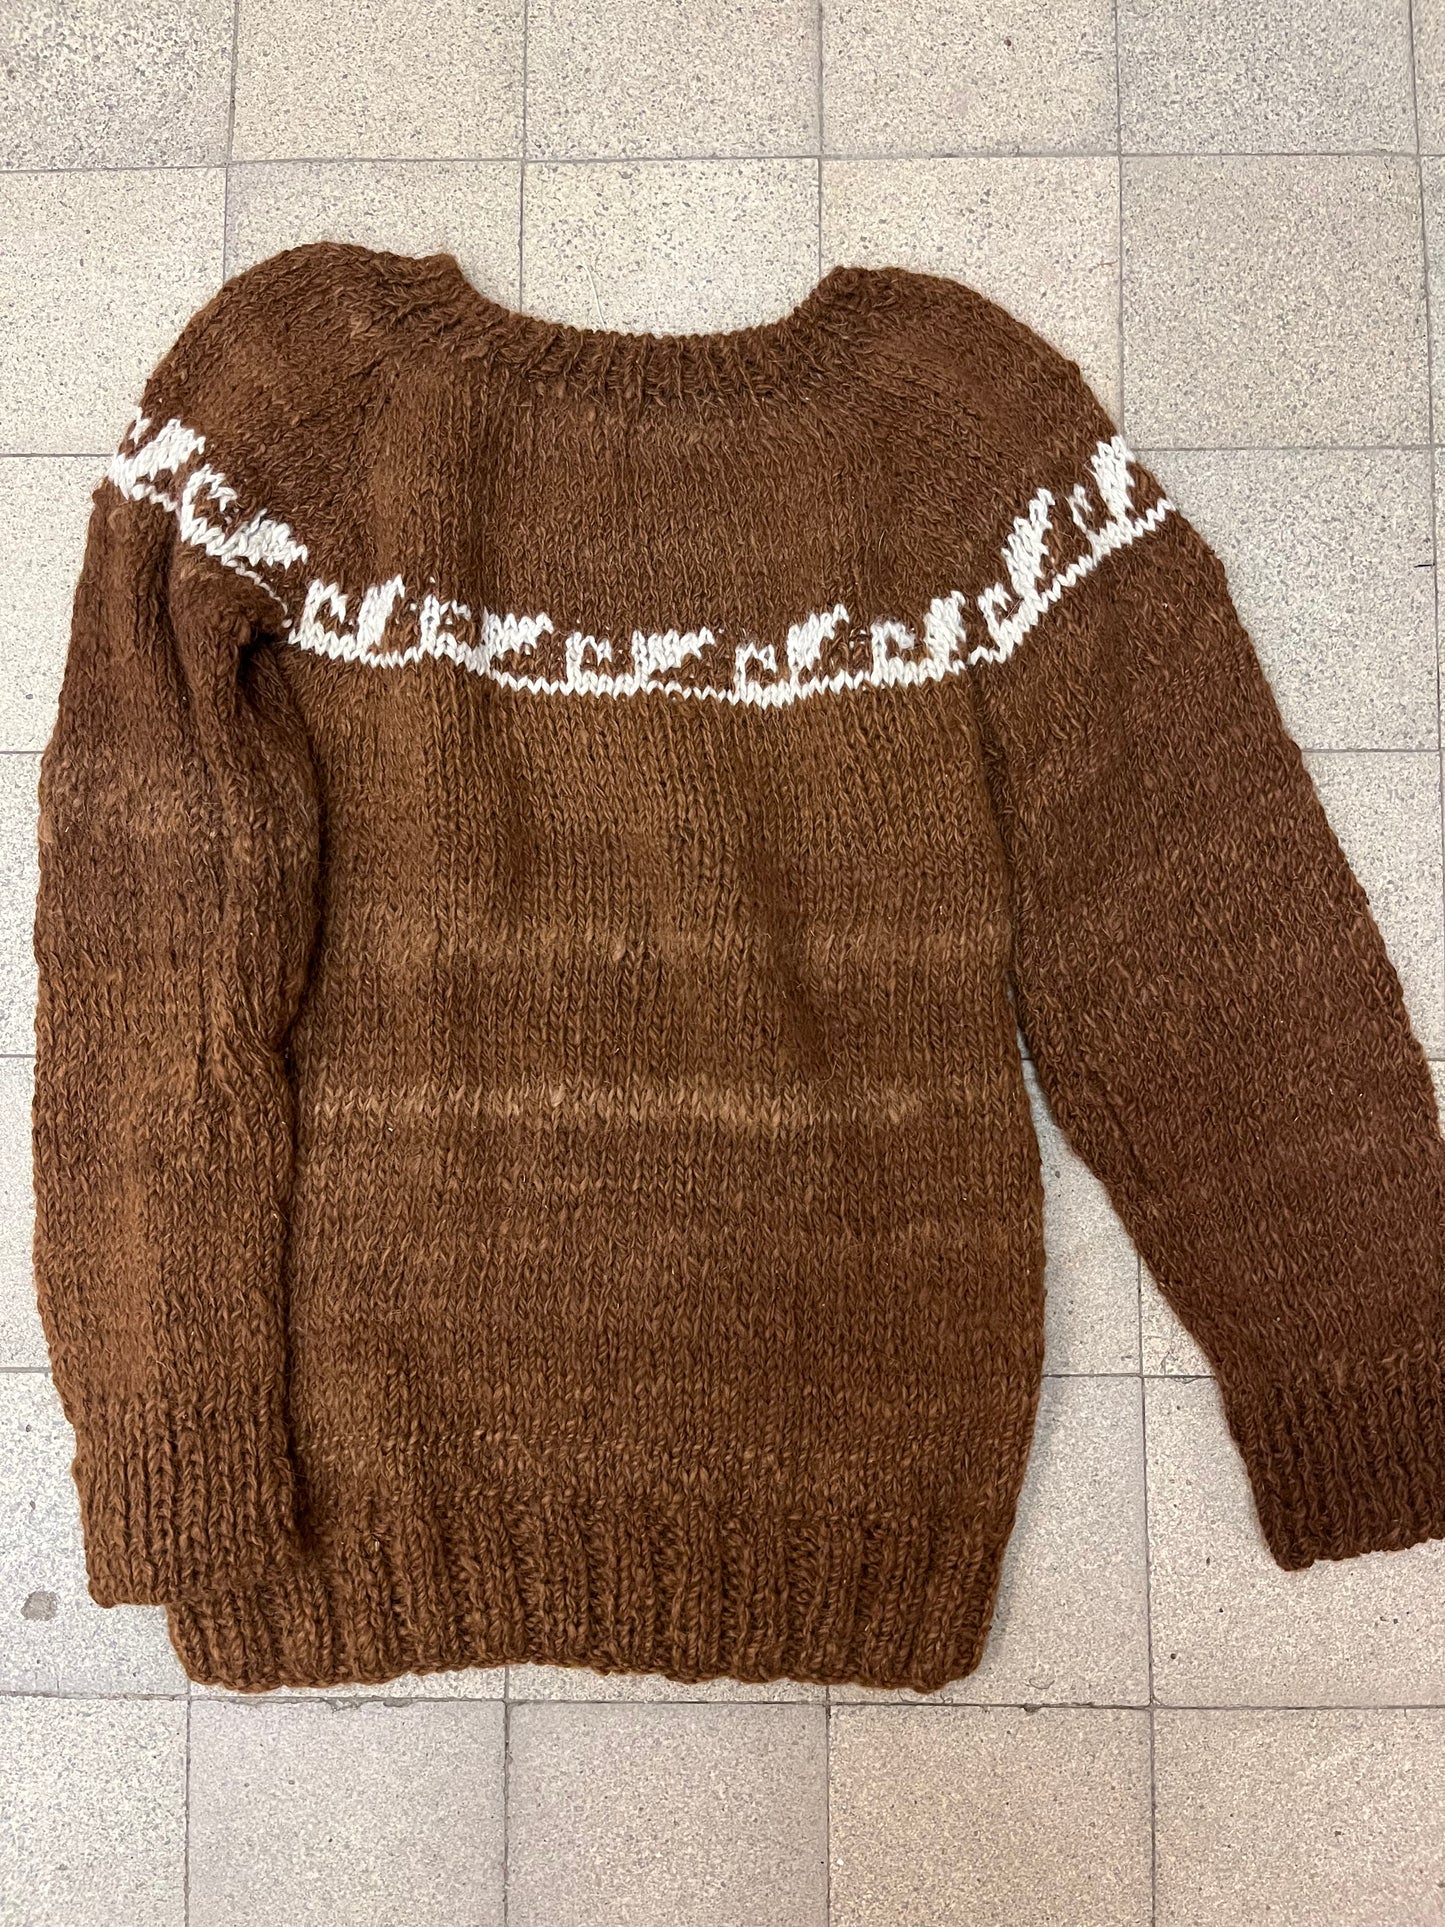 LOZANO sweater